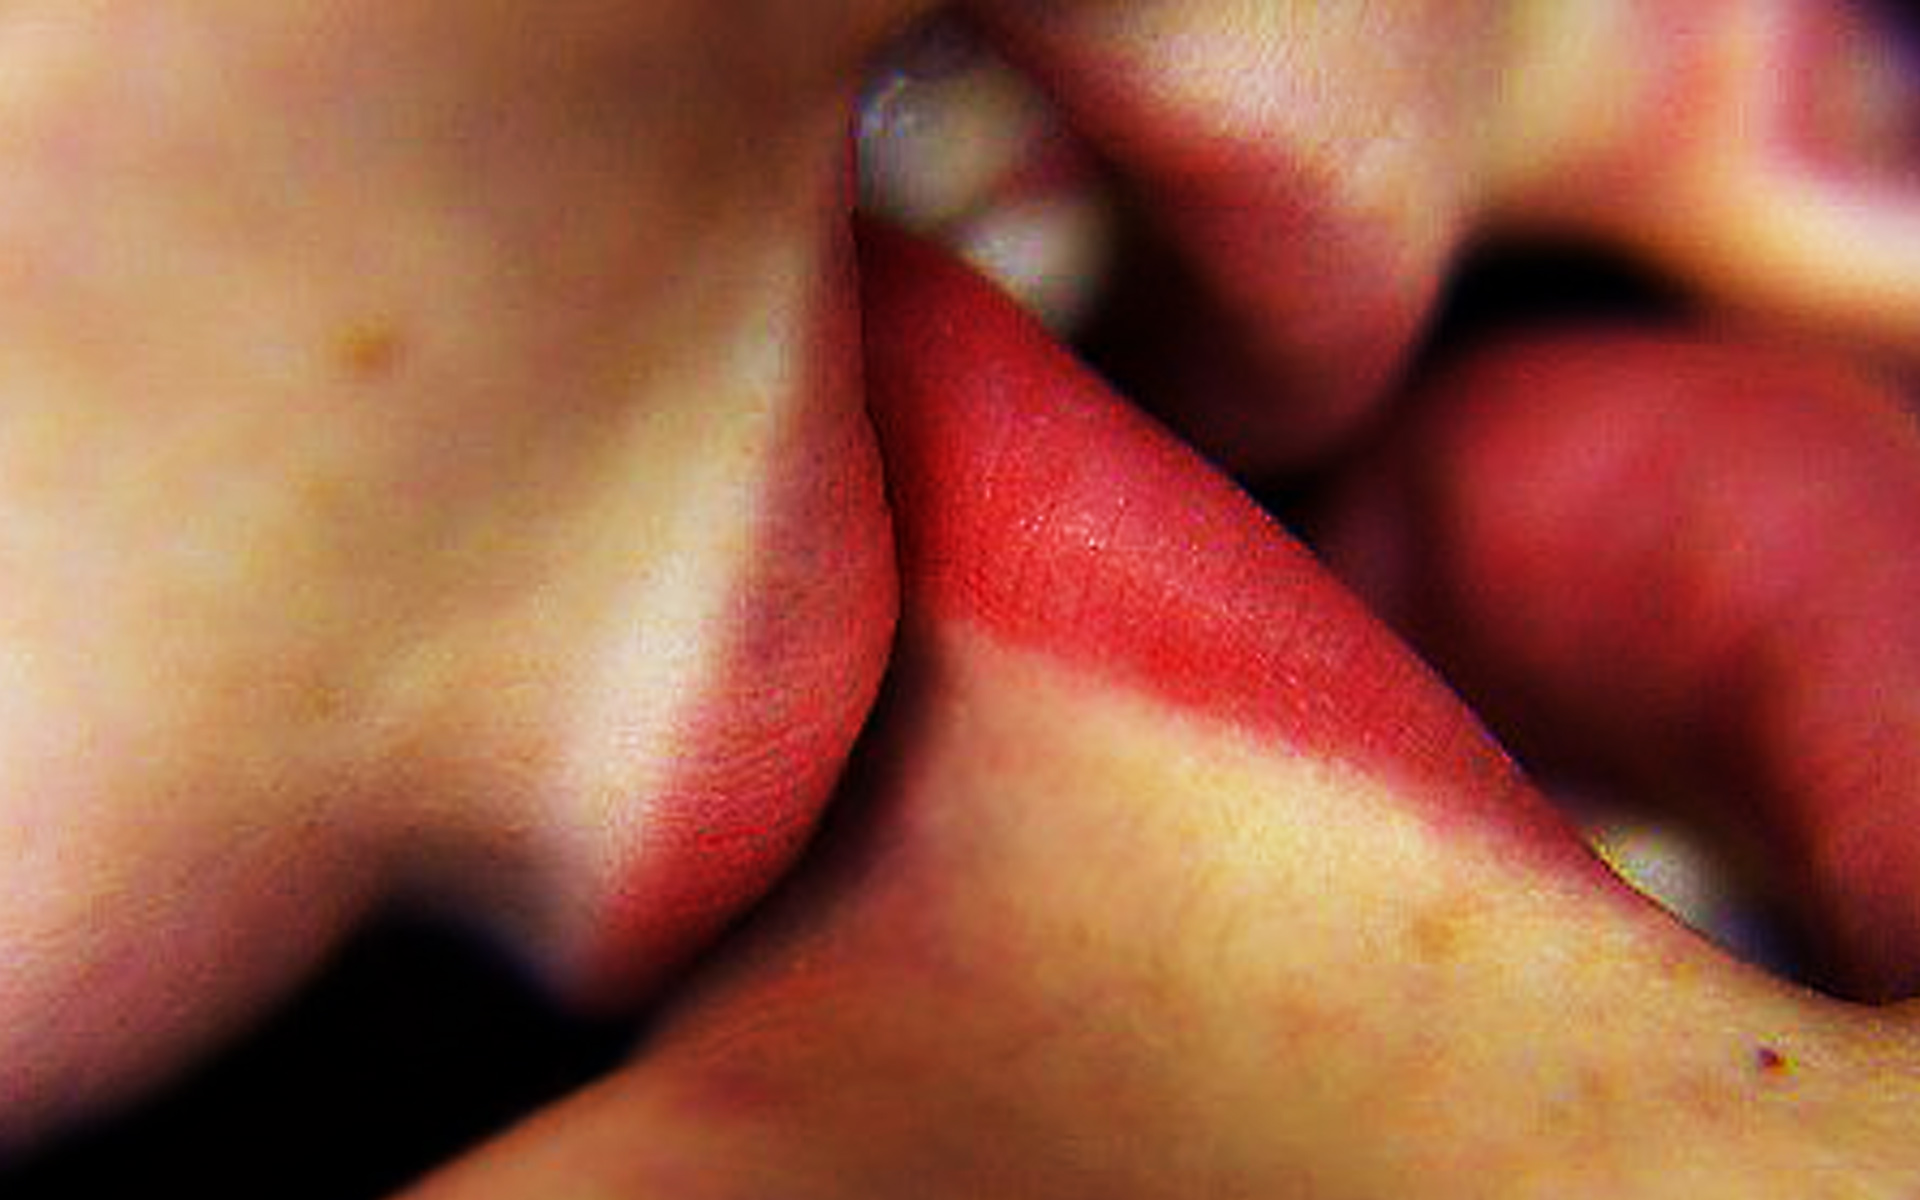 Впился в губы поцелуем: ......и впились в губы жадным, требовательным поцелуем. — @дневники: асоциальная сеть